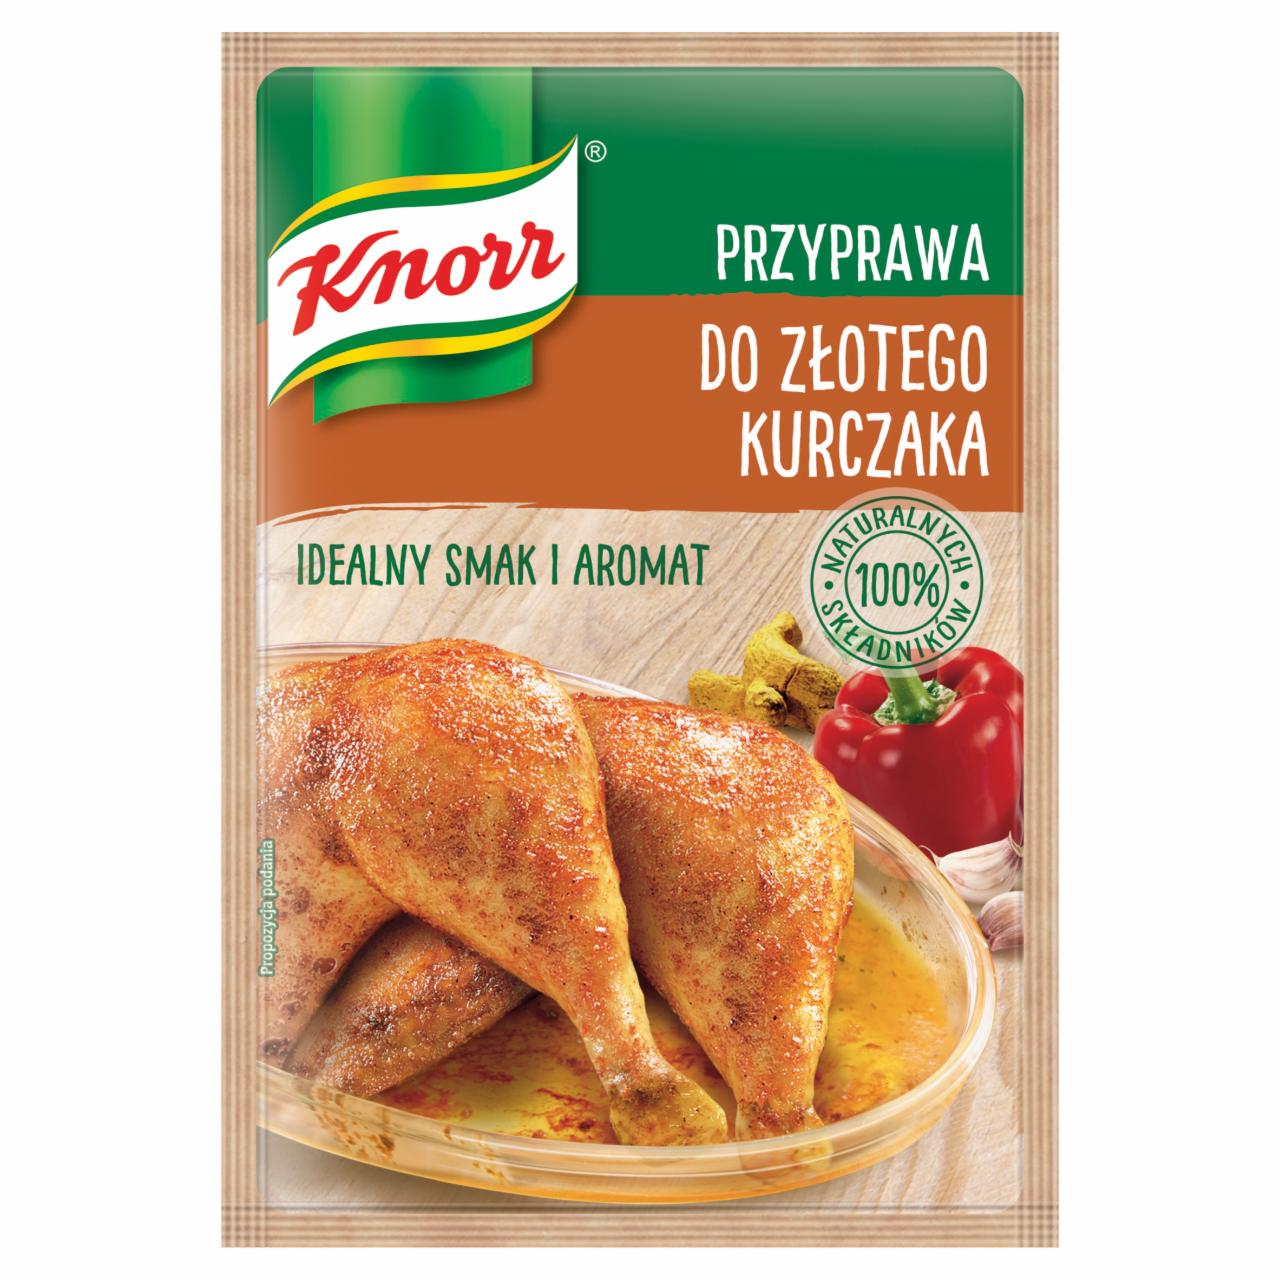 Zdjęcia - Knorr Przyprawa do złotego kurczaka 23 g